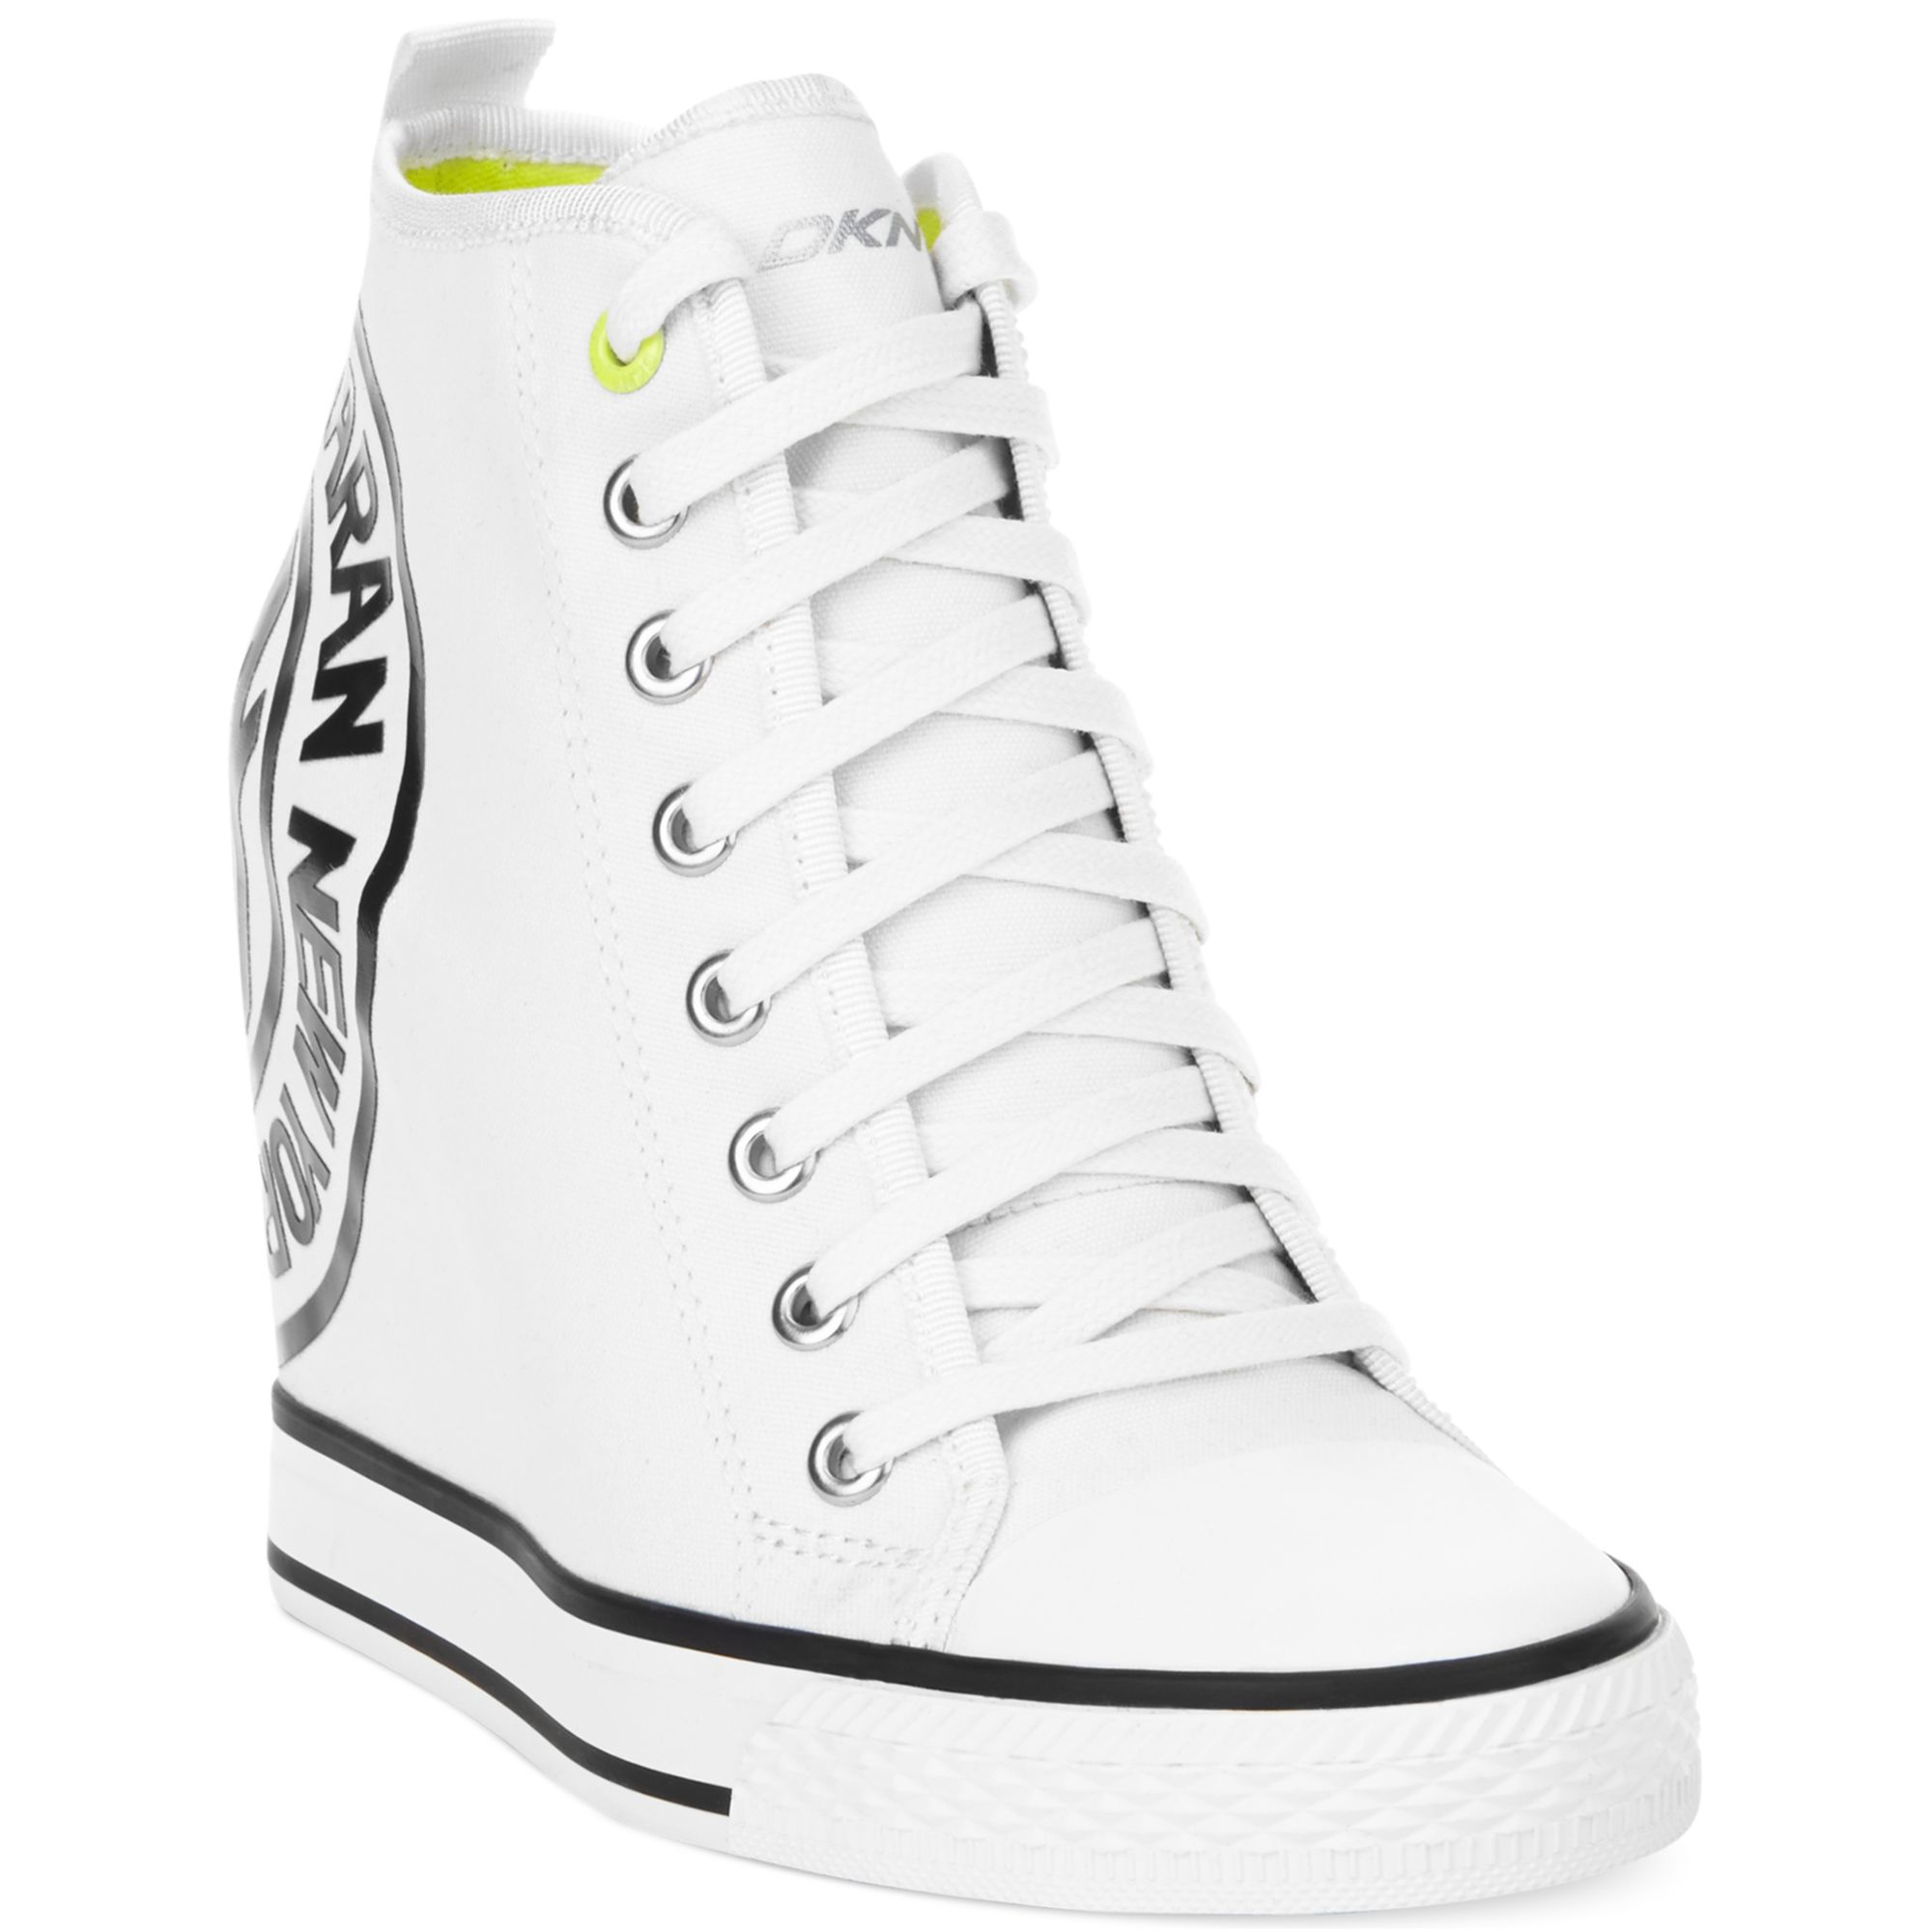 DKNY Grommet Wedge Sneakers in White | Lyst